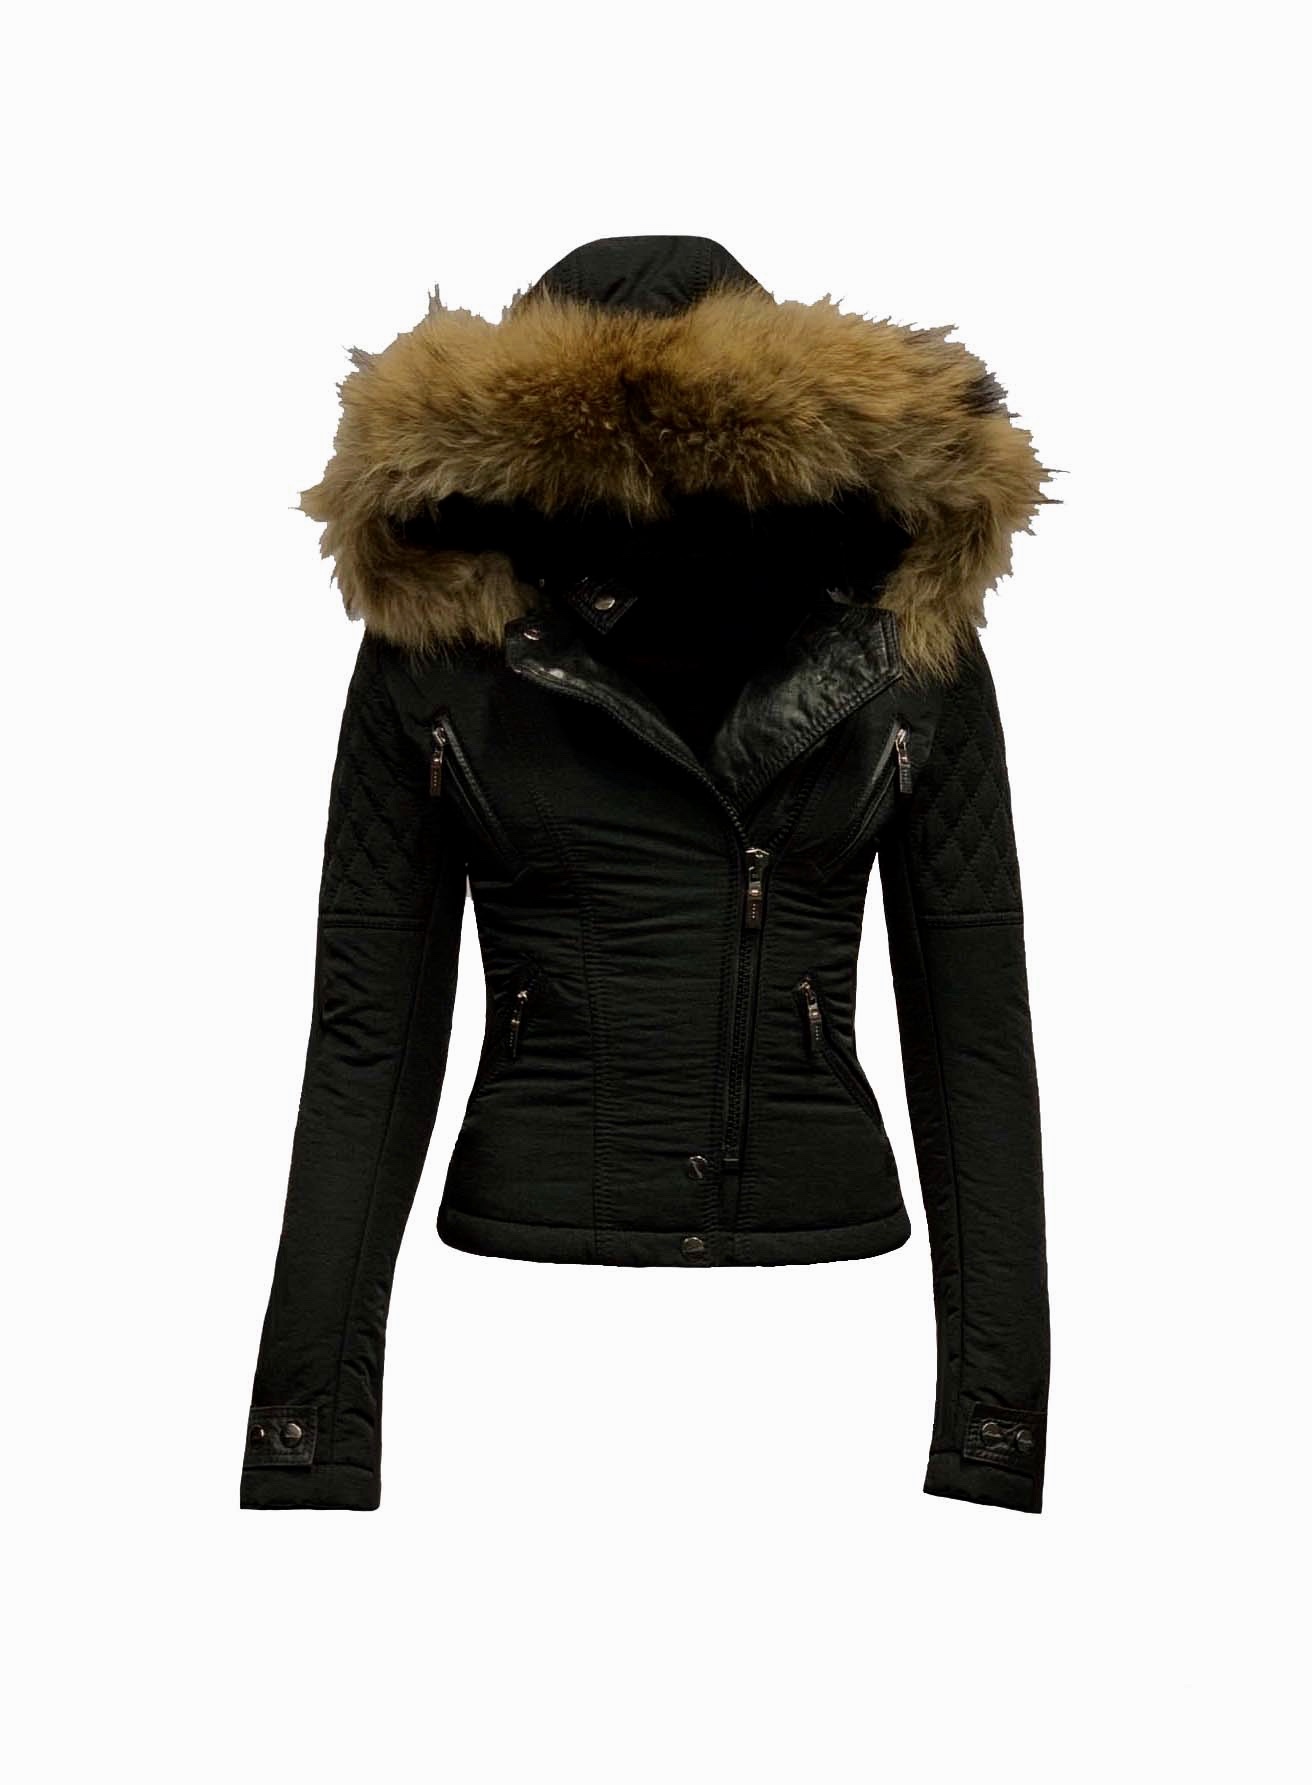 Bedreven klant per ongeluk Zwart winter dames jas met afneembaar bontkraag -Alecantti – BK Leder